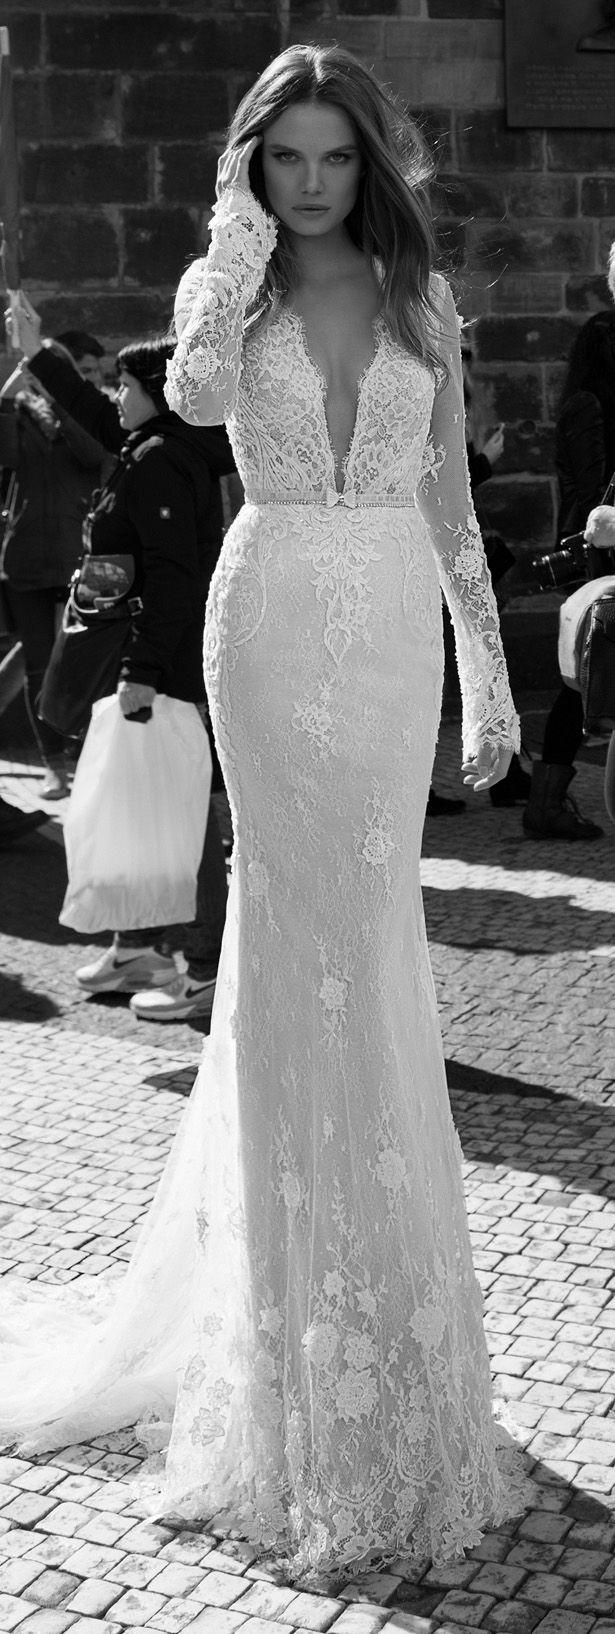 زفاف - Wedding Dress By Berta Bridal Fall 2015